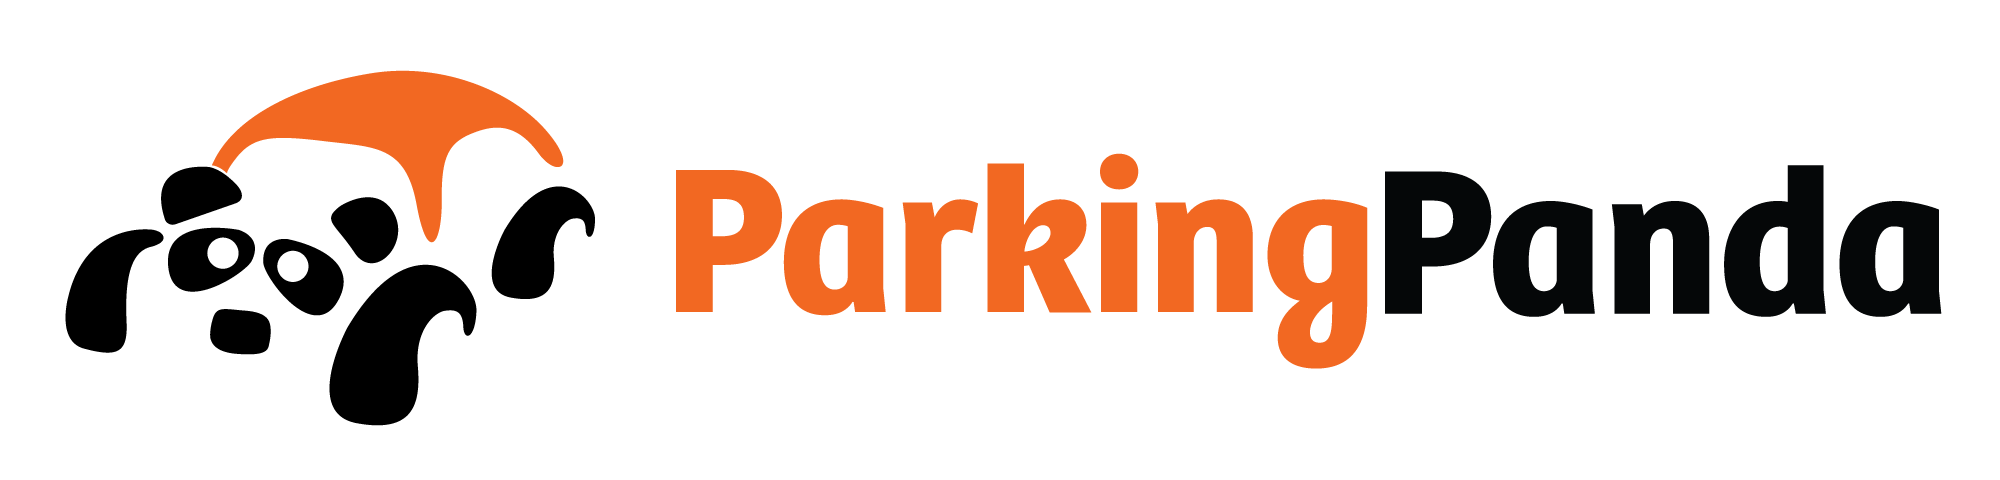 parking-panda-logo-HR.png